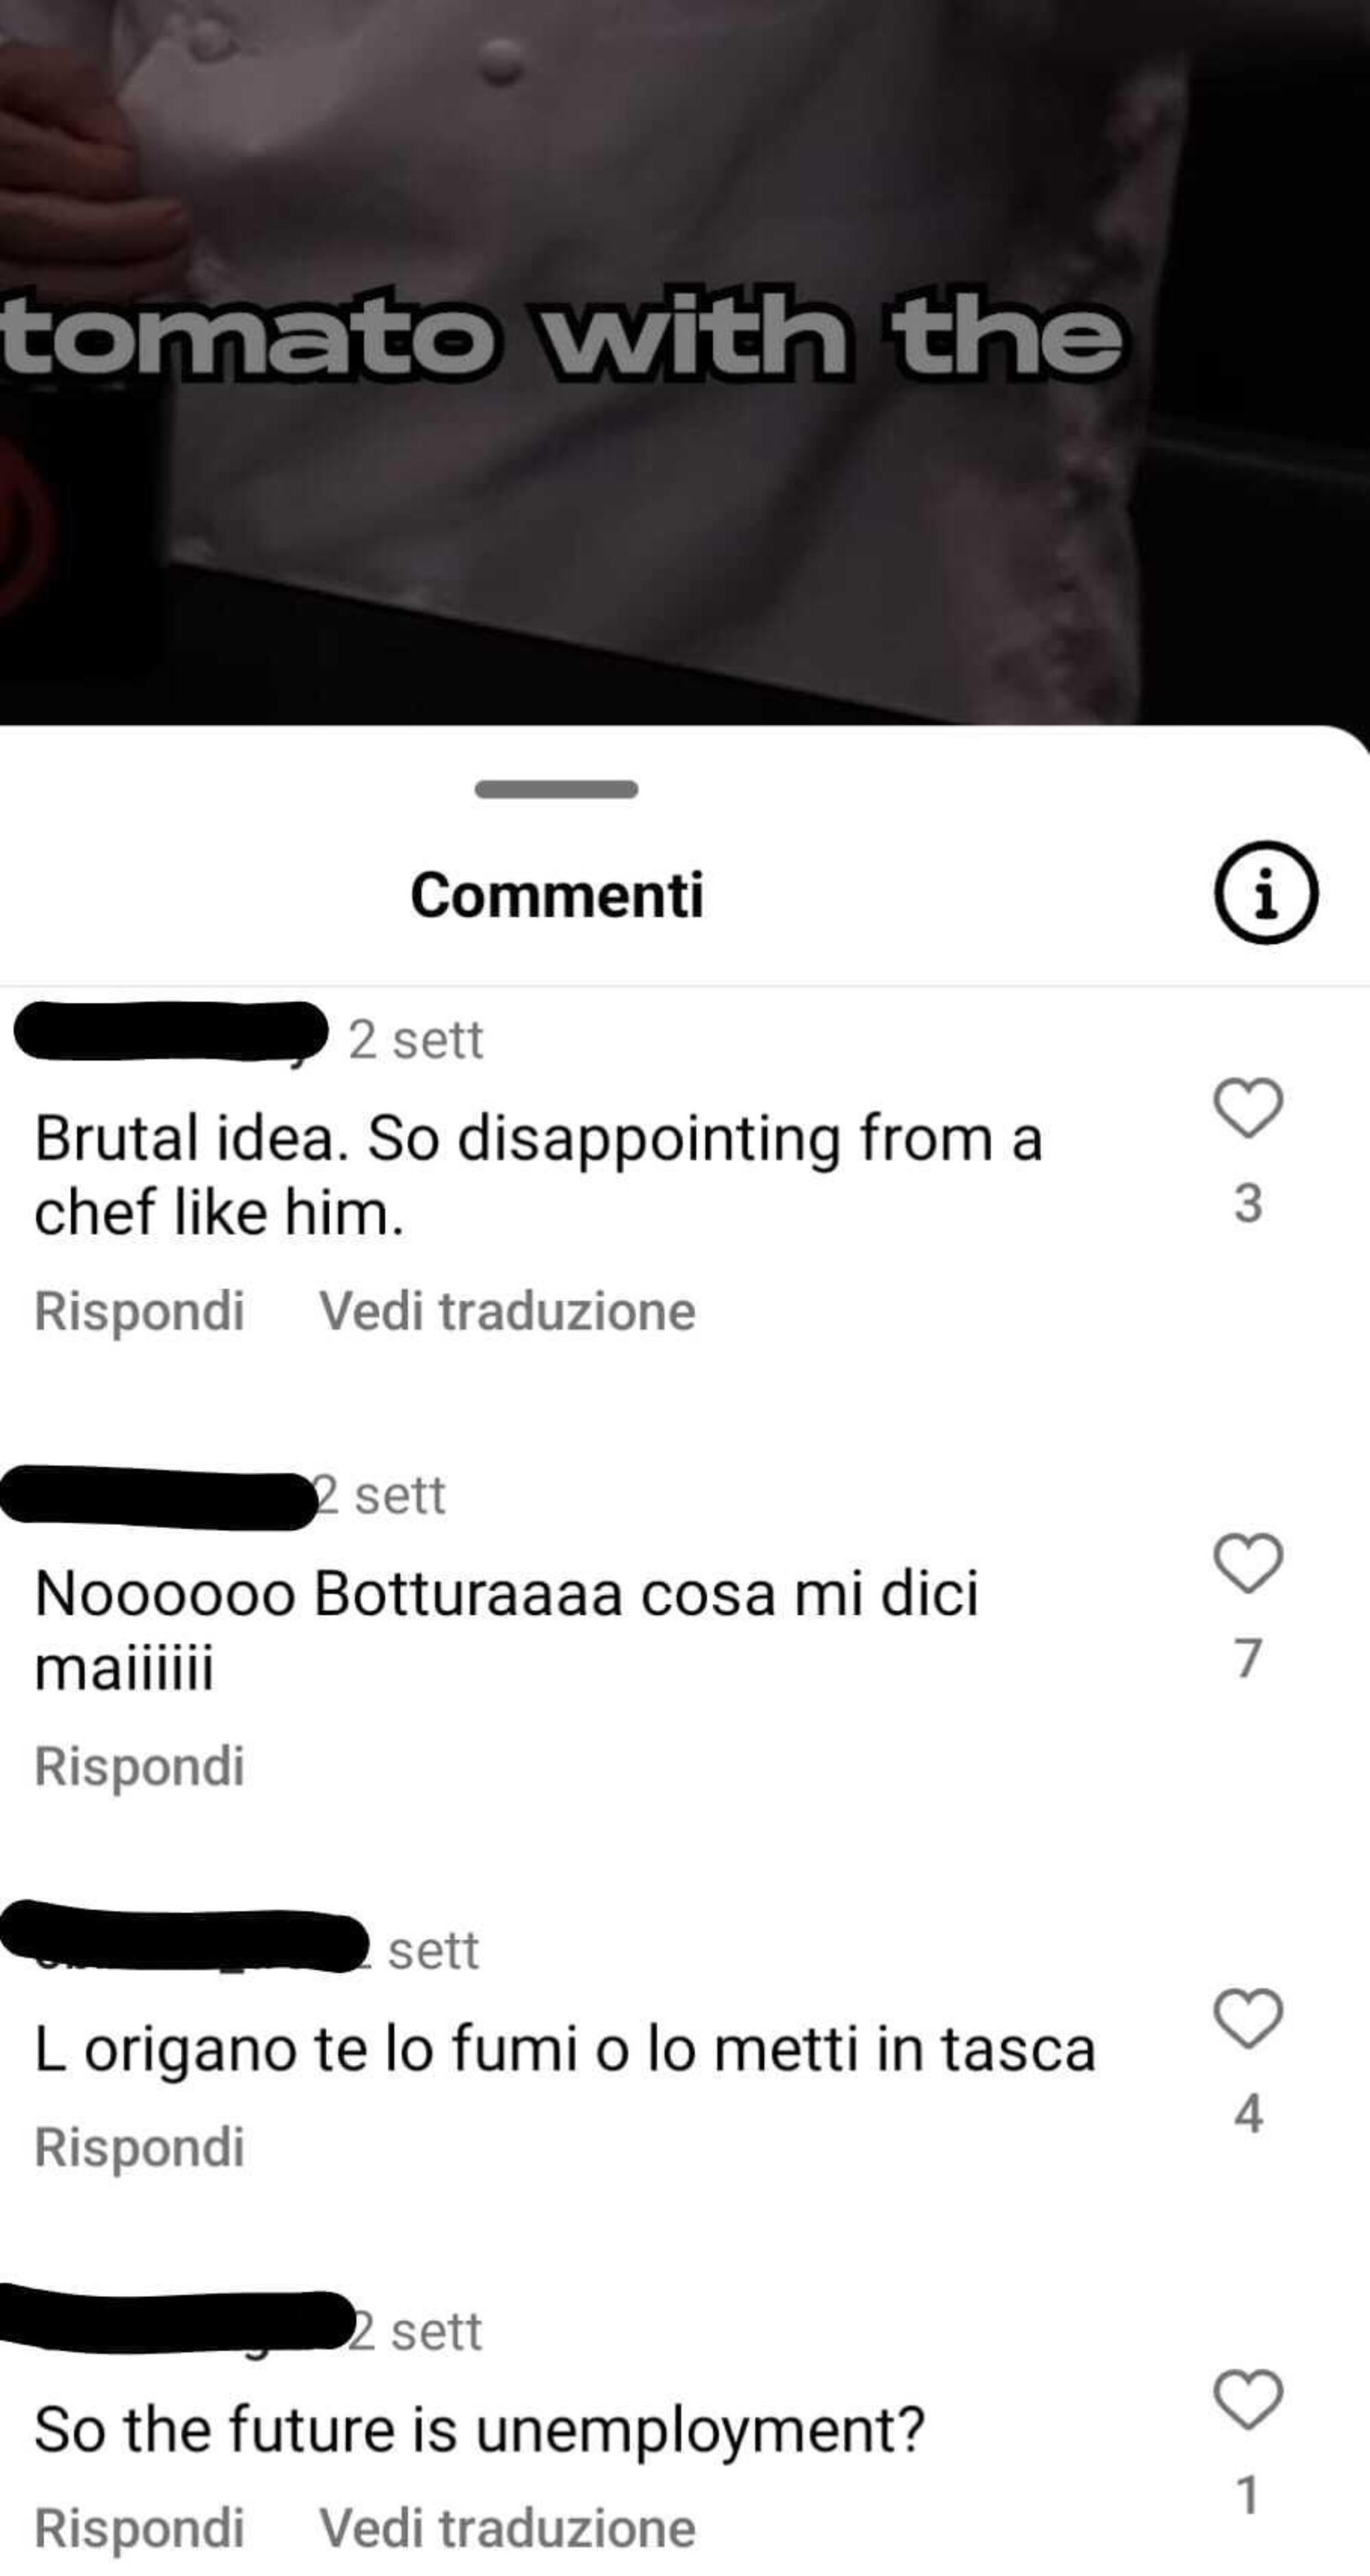 Alcuni dei commenti critici sotto al video di Massimo Bottura